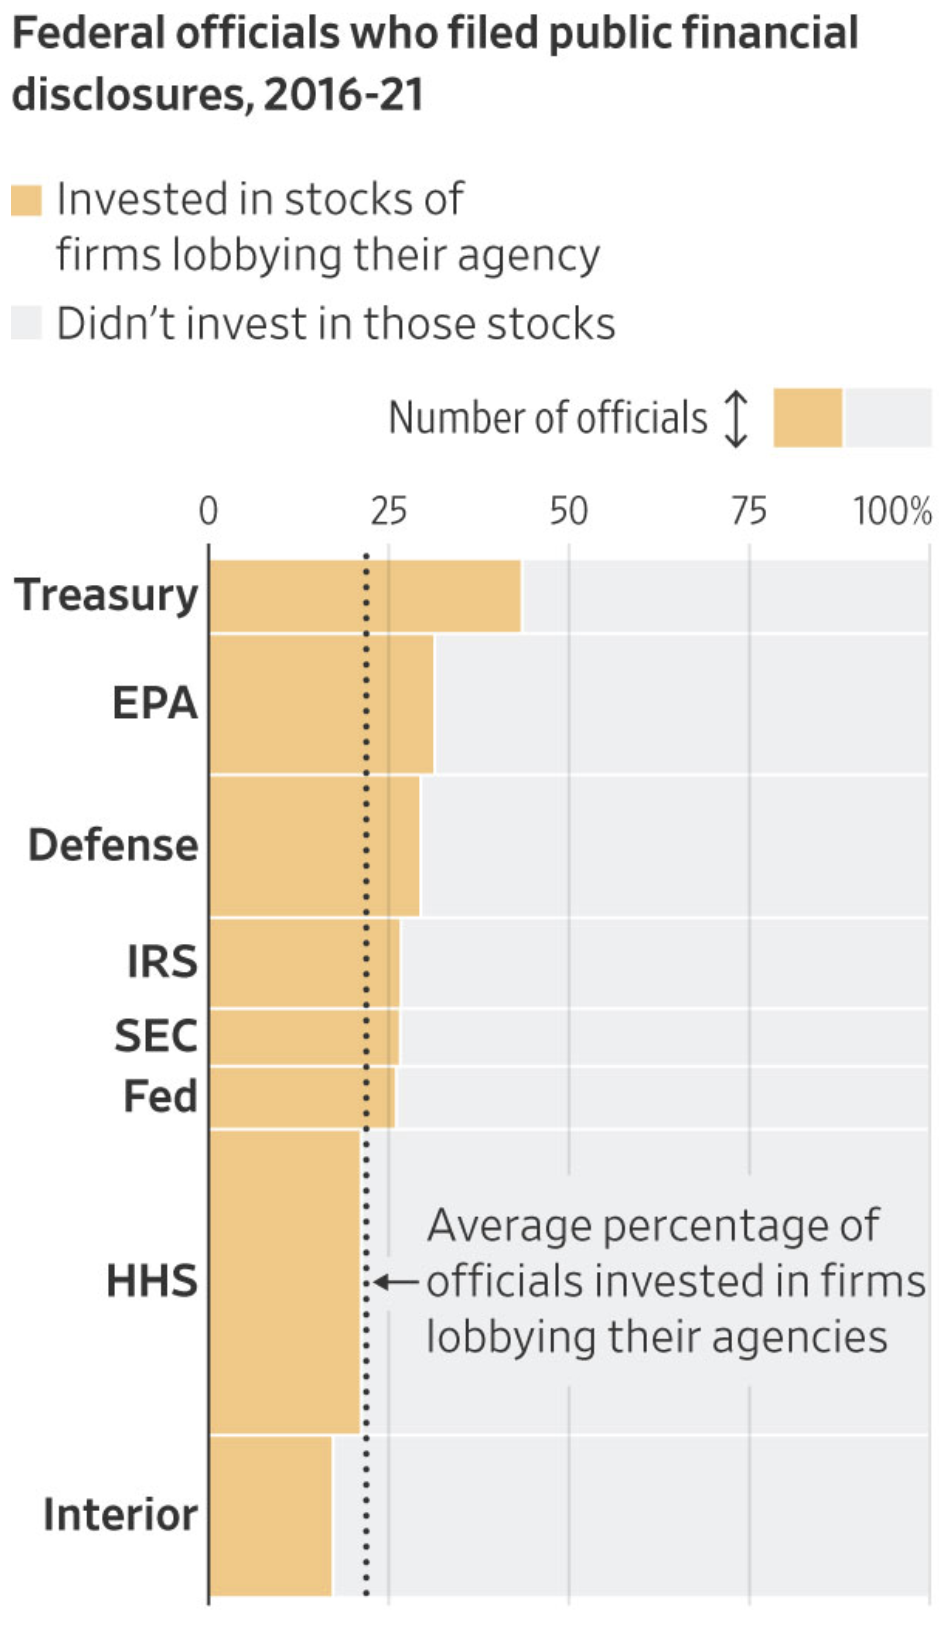 Funcionários da SEC investiram em empresas fazendo lobby em sua agência, 2016-2021